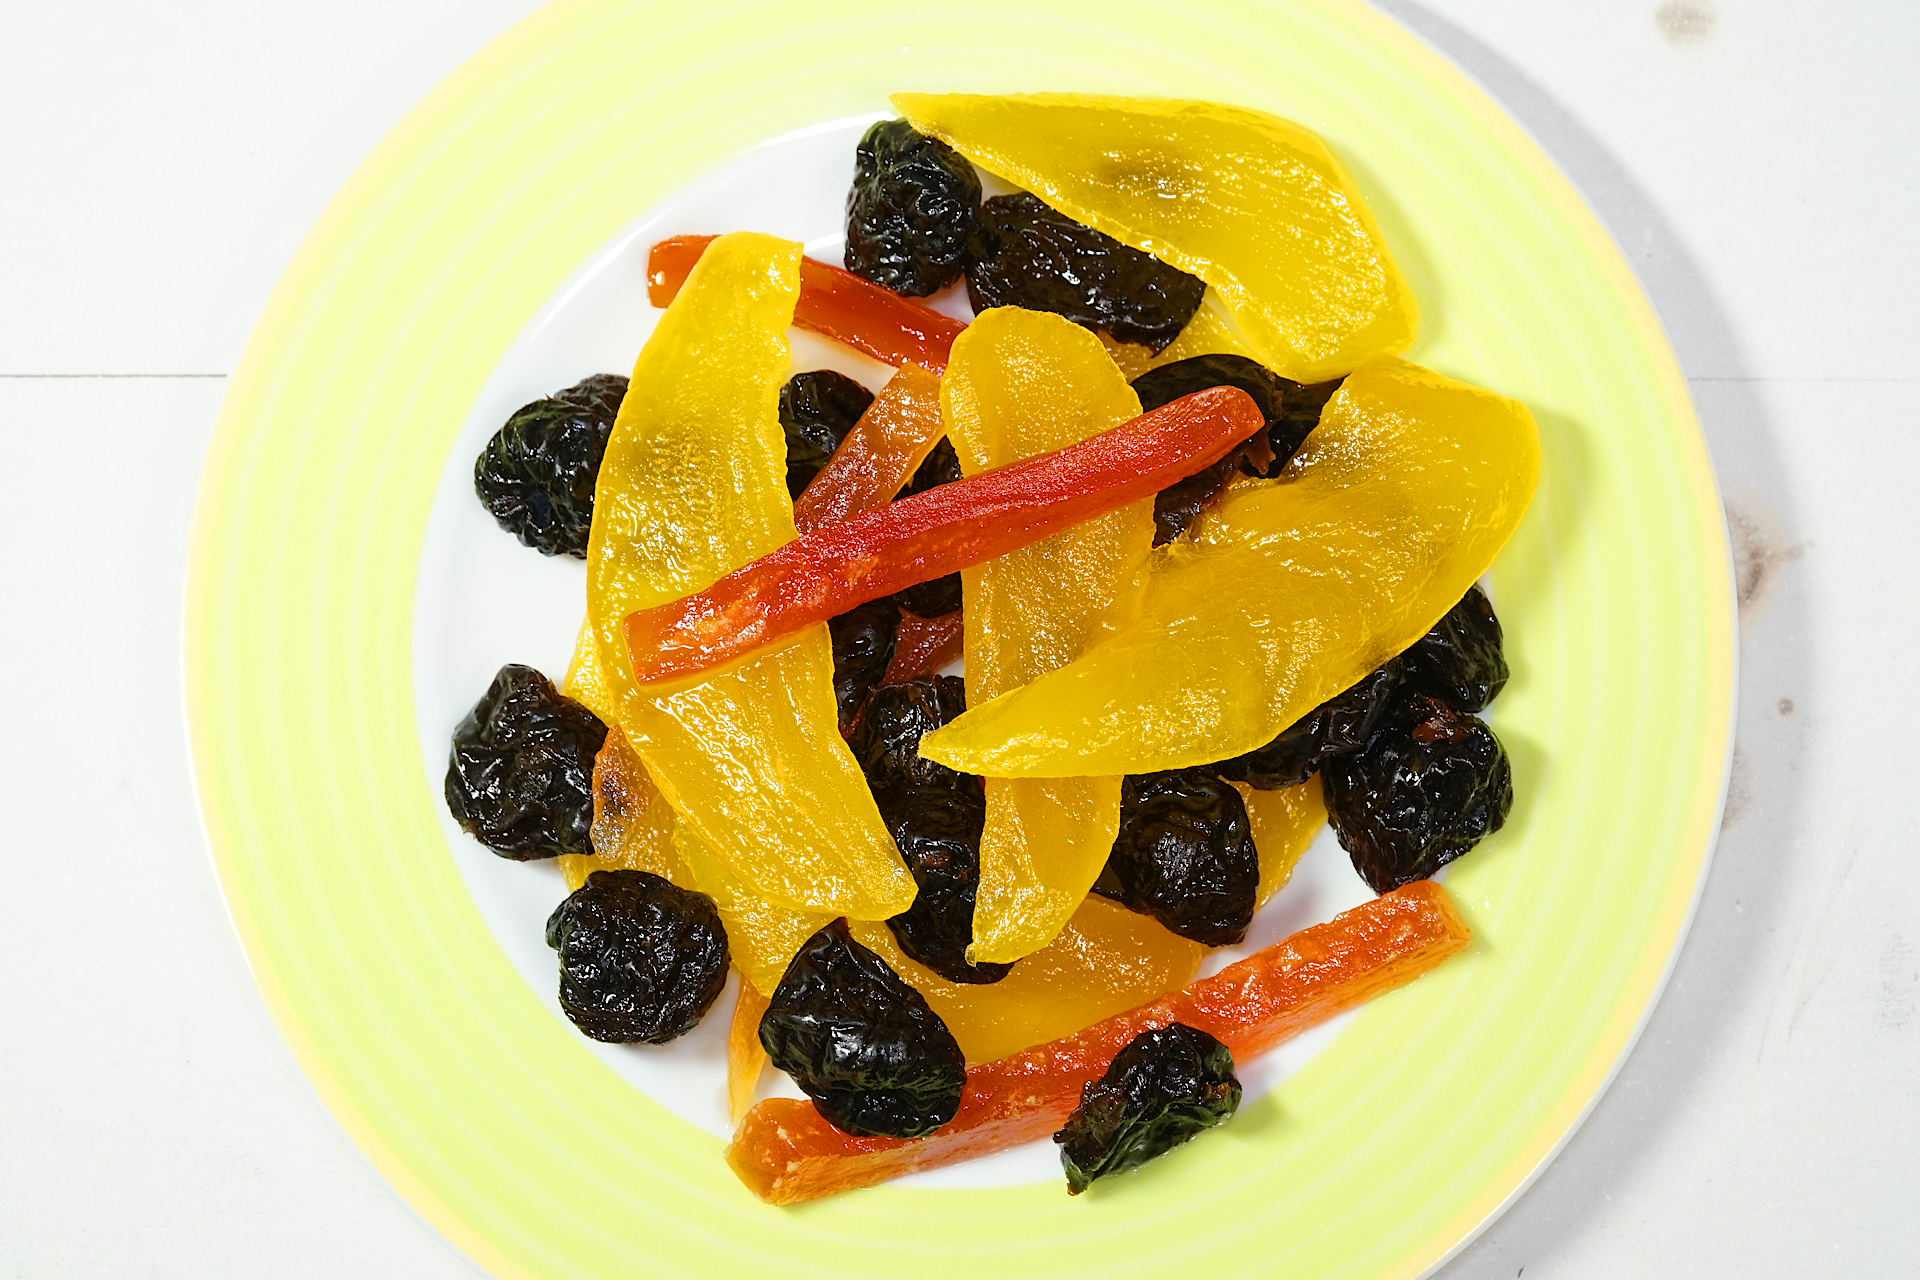 黄緑色の縁取りの丸い皿の上に盛られた水に濡れたドライ フルーツを撮影した写真。 黒色で皺だらけのプルーンと黄色の細長く薄切りにされたマンゴーと赤色の千切りのパパイアが乱雑に盛られている。